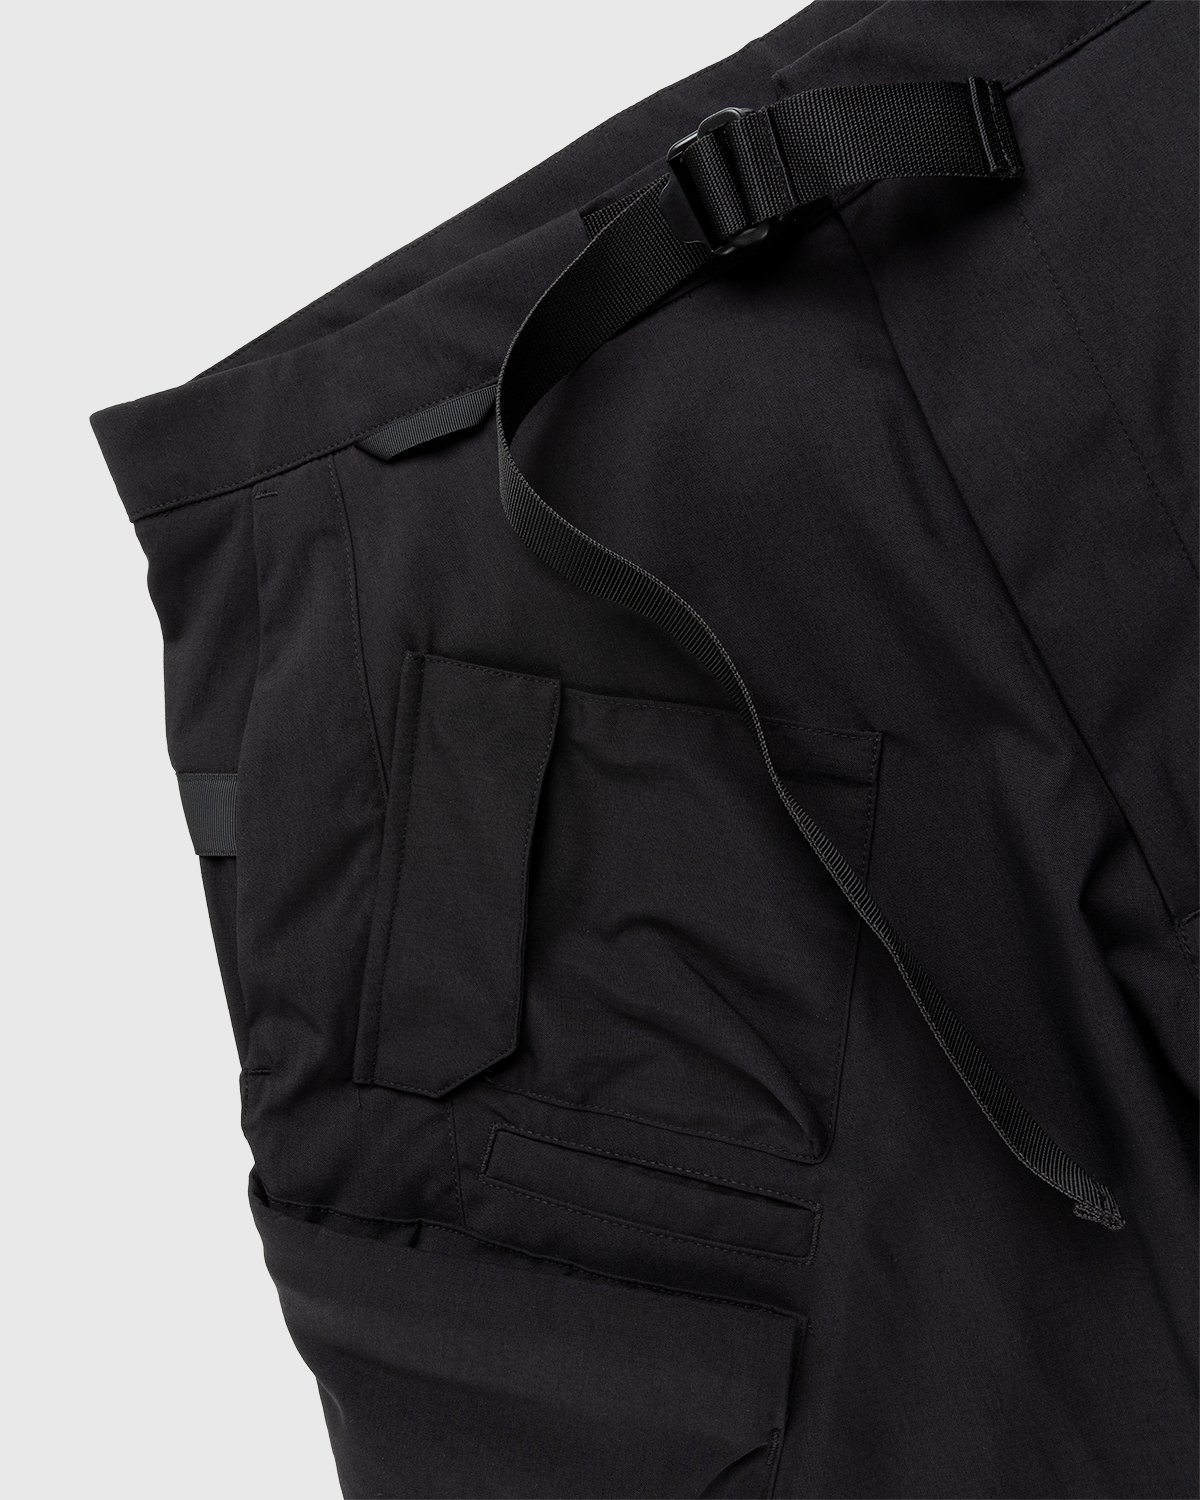 ACRONYM - SP29-M Cargo Shorts Black - Clothing - Black - Image 5